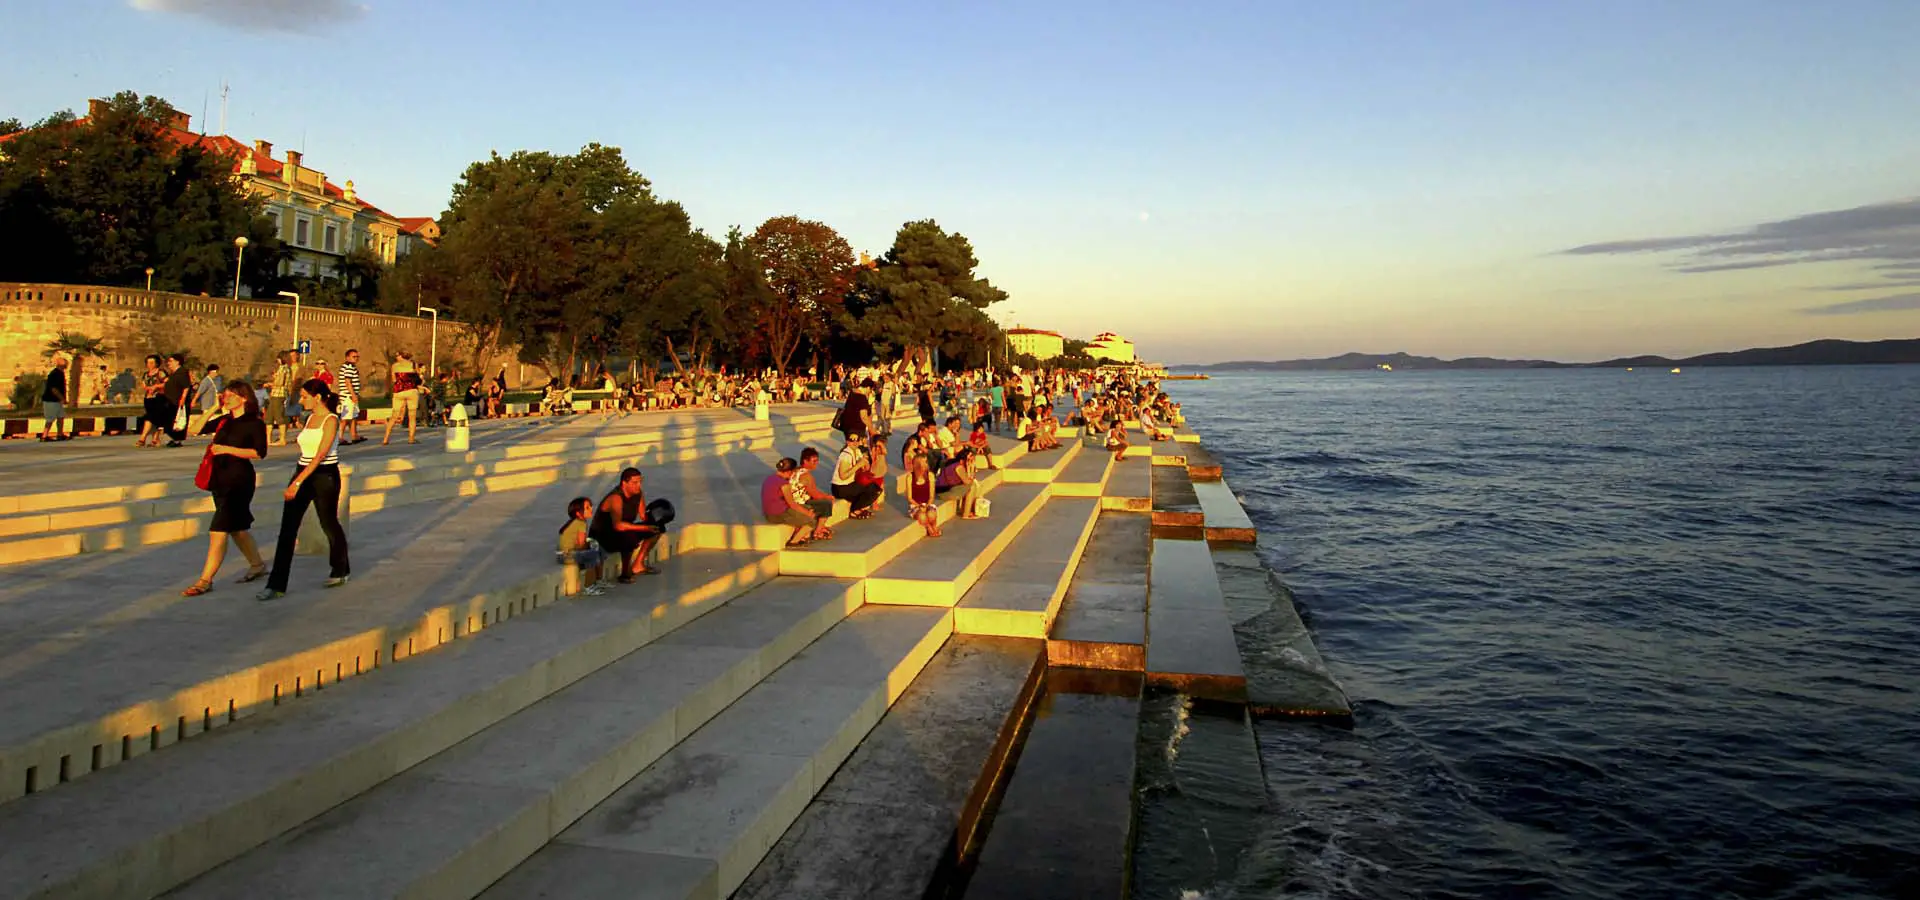 Descopera locuri: Zadar. Un oras antic de pe coasta Dalmata ce merita inclus in destinatiile turistice